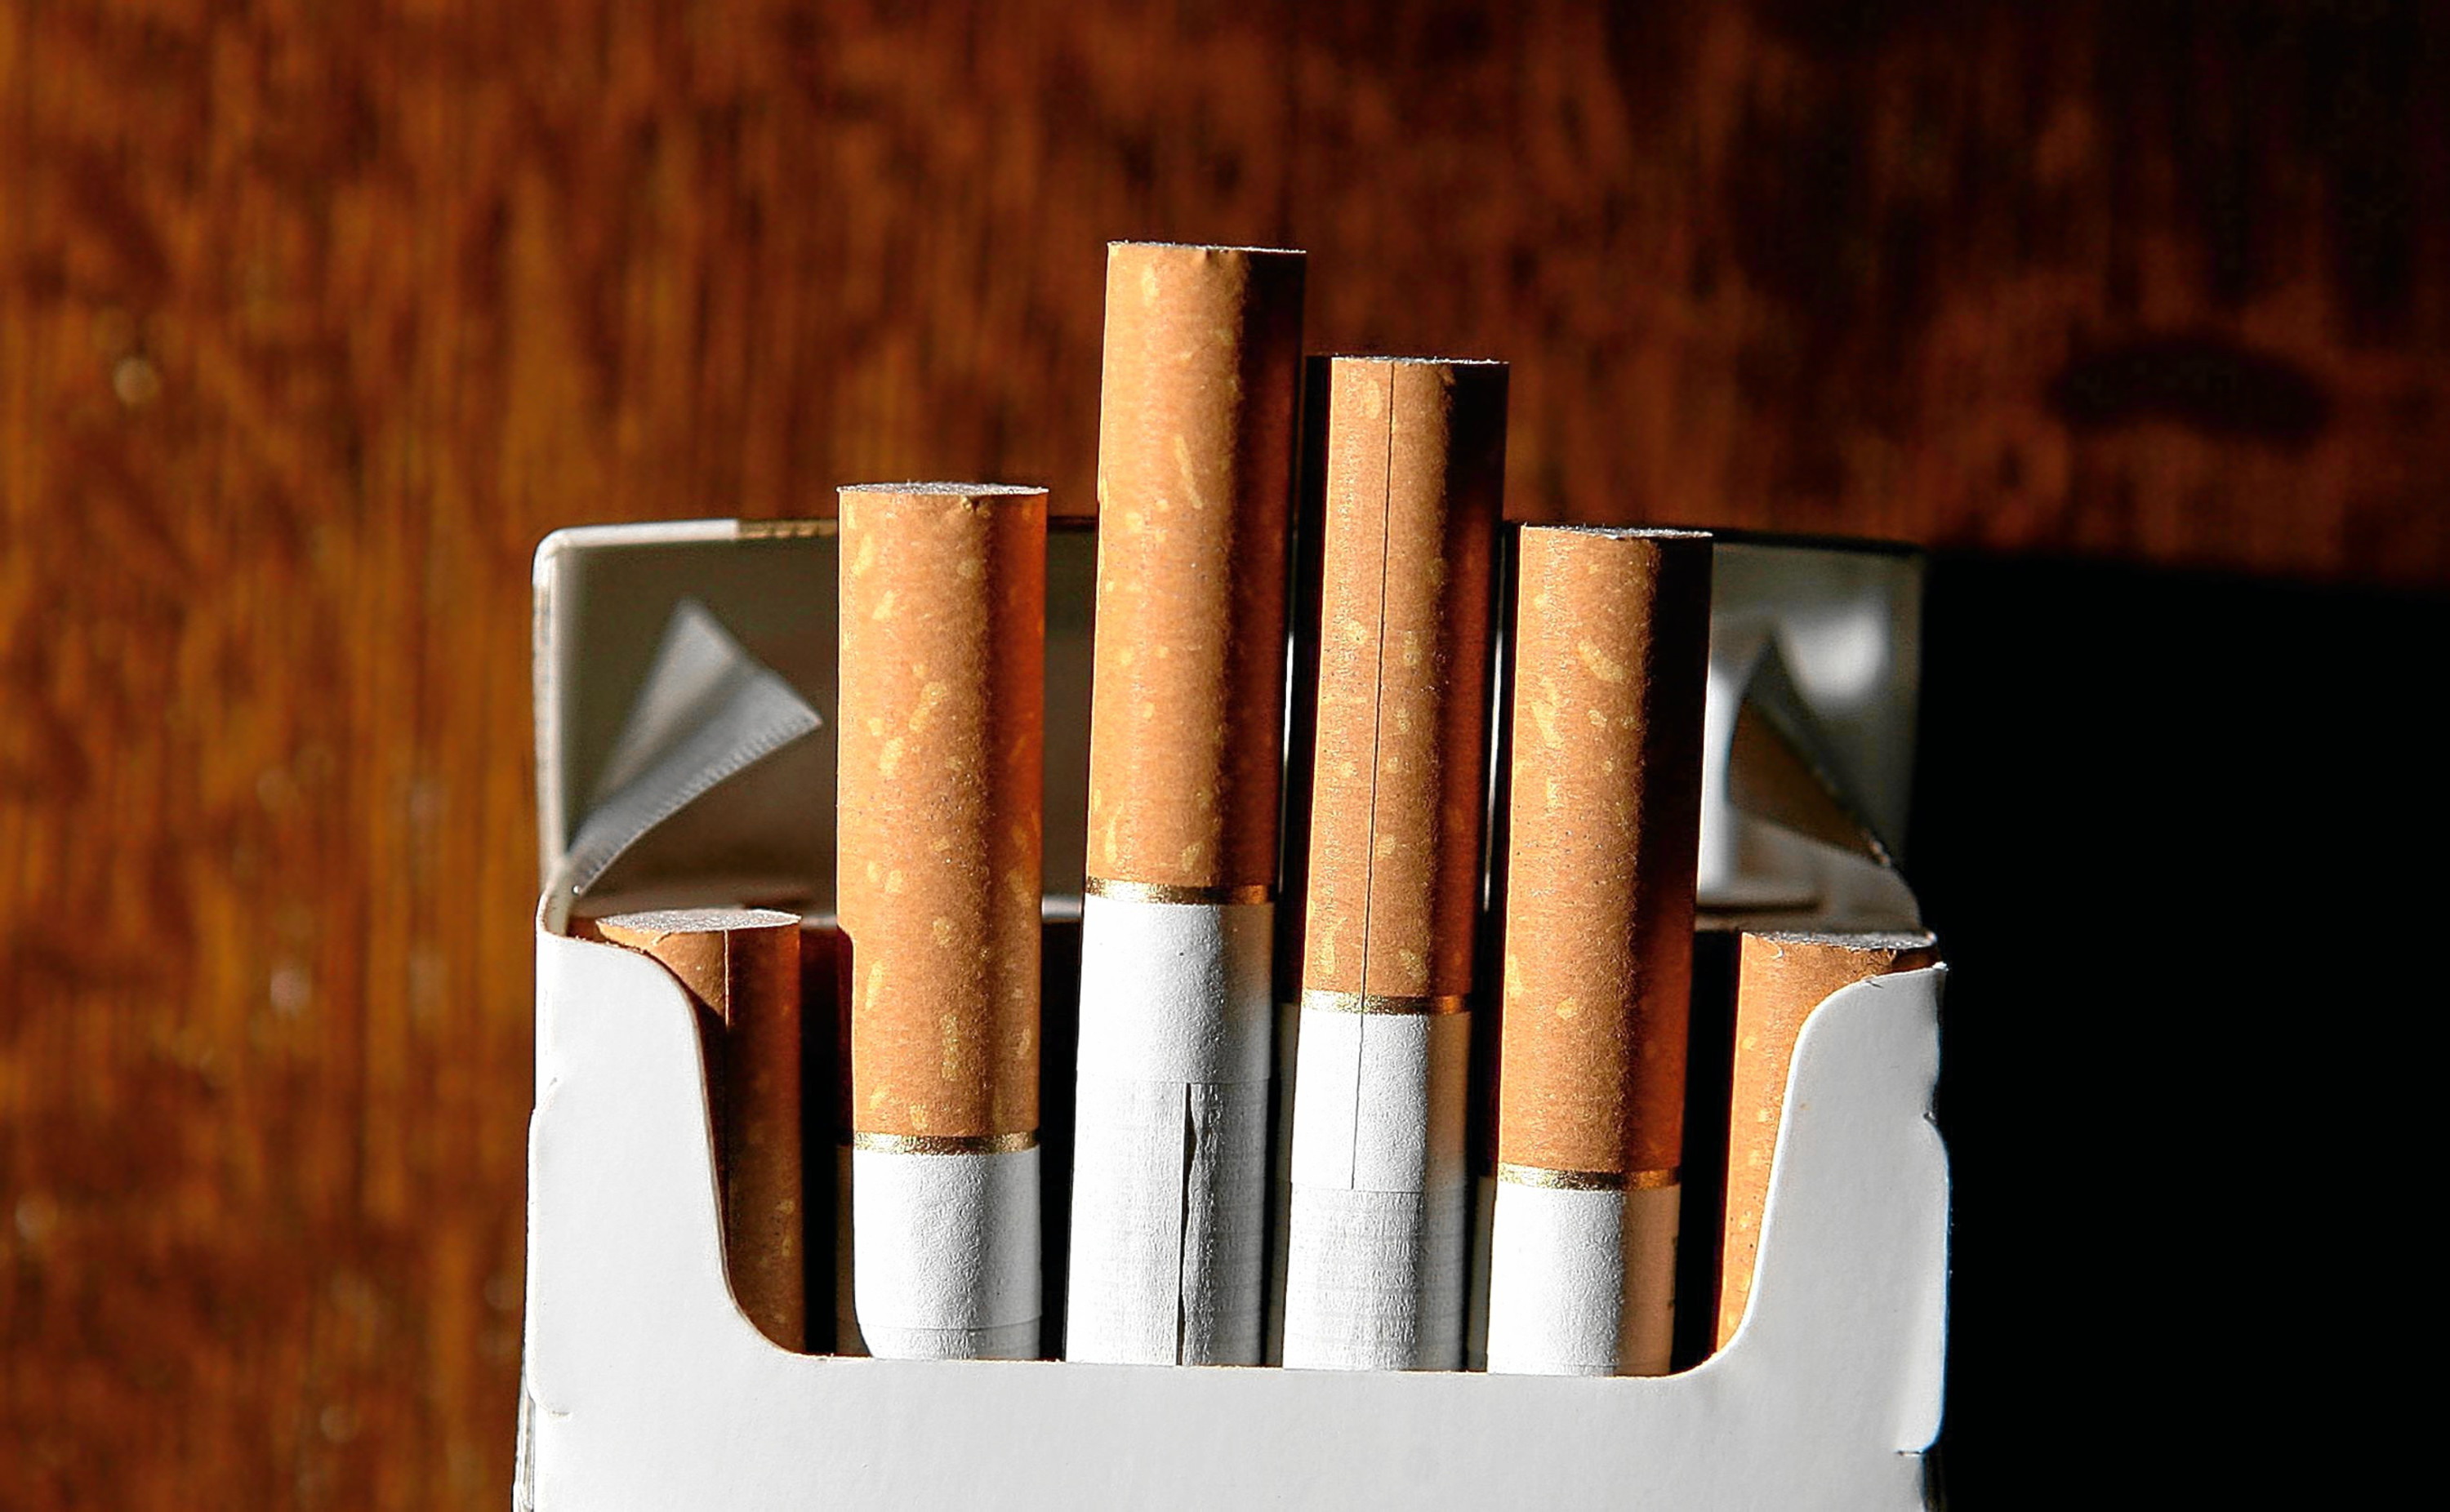 HMRC says 'illicit' tobacco was seized.